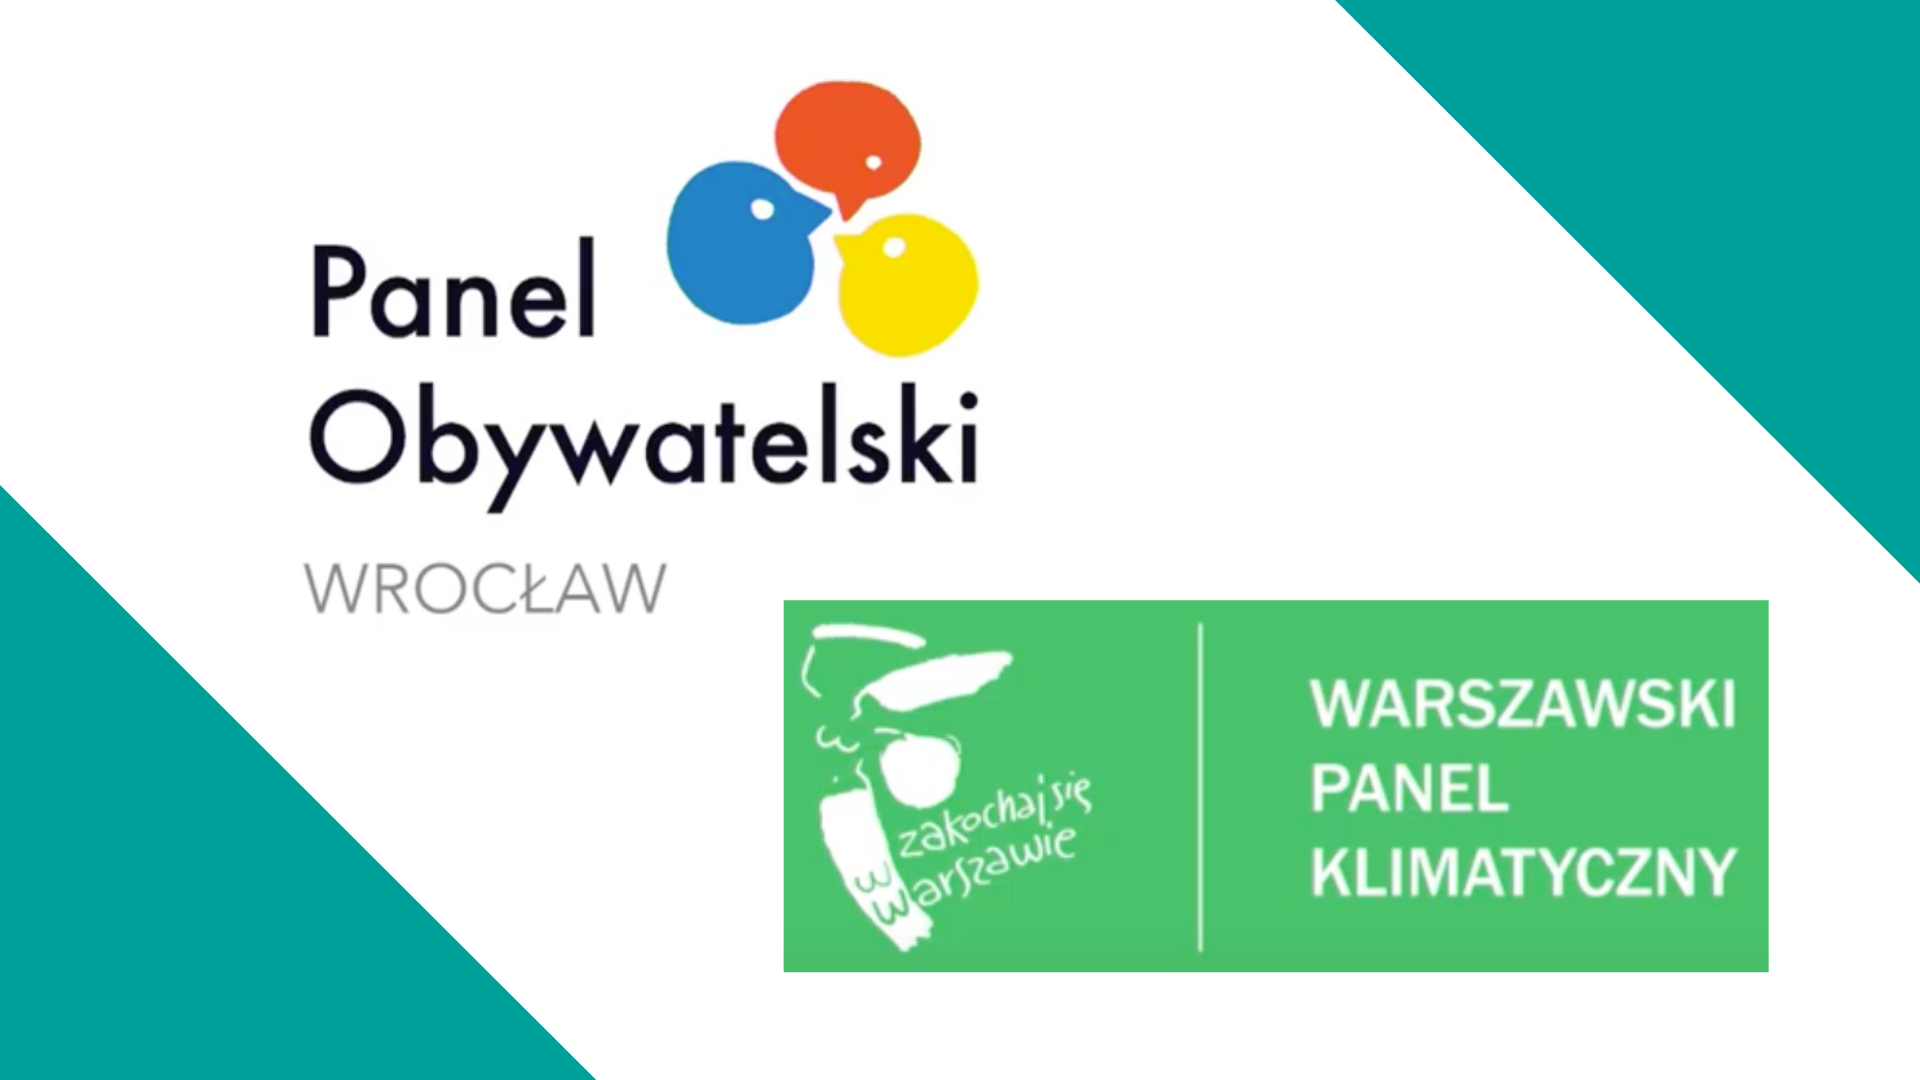 Panele obywatelskie we Wrocławiu i Warszawie – nasze zaangażowanie